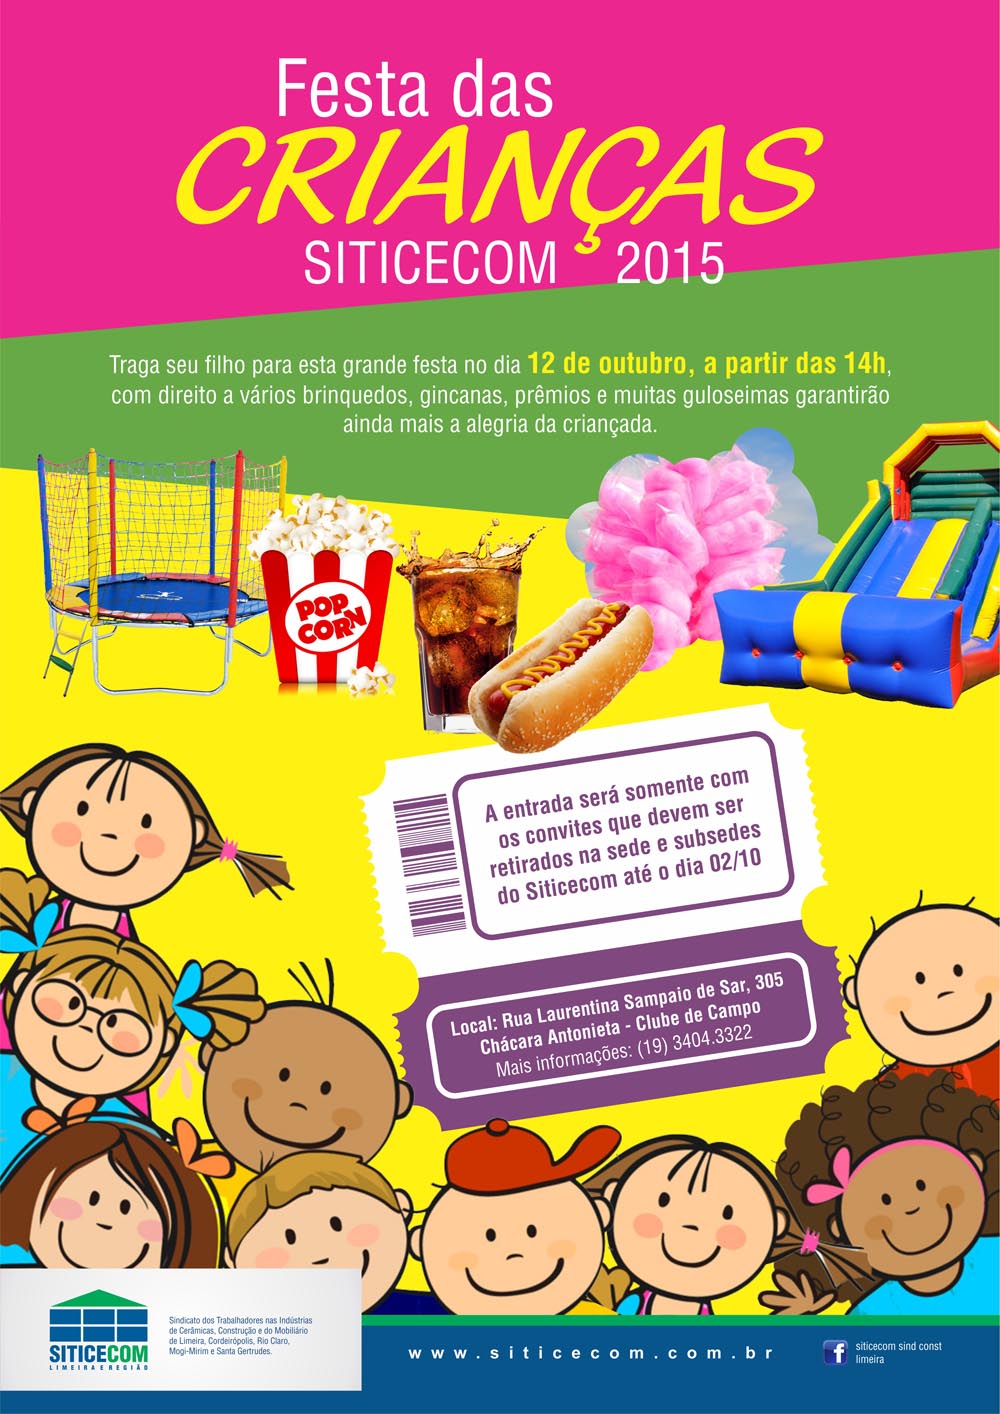 Festa das Crianças Siticecom 2015